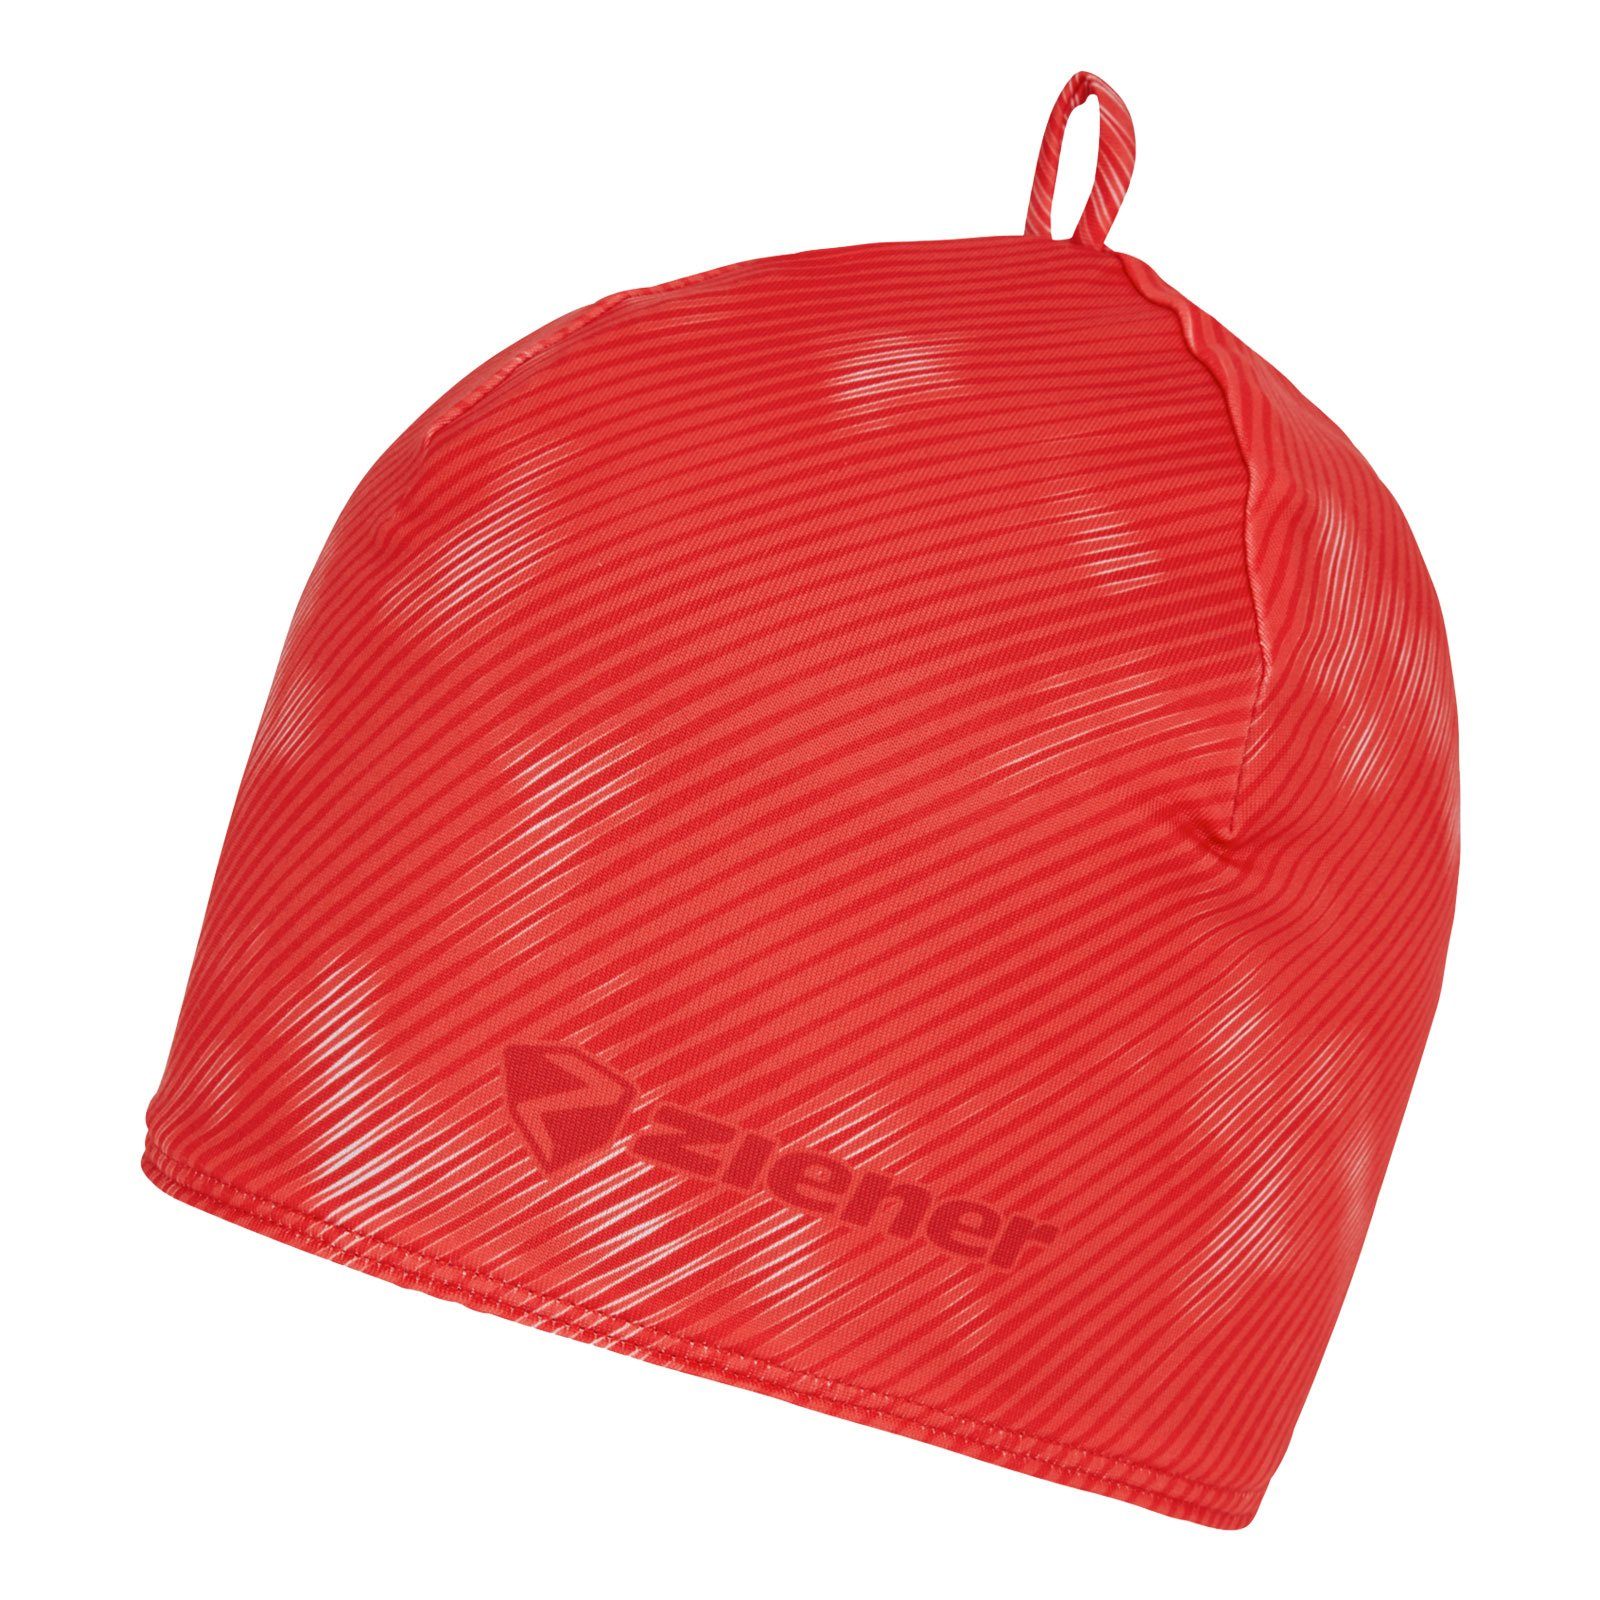 Ziener Beanie Isoke mit Markenschriftzug Rot | Beanies